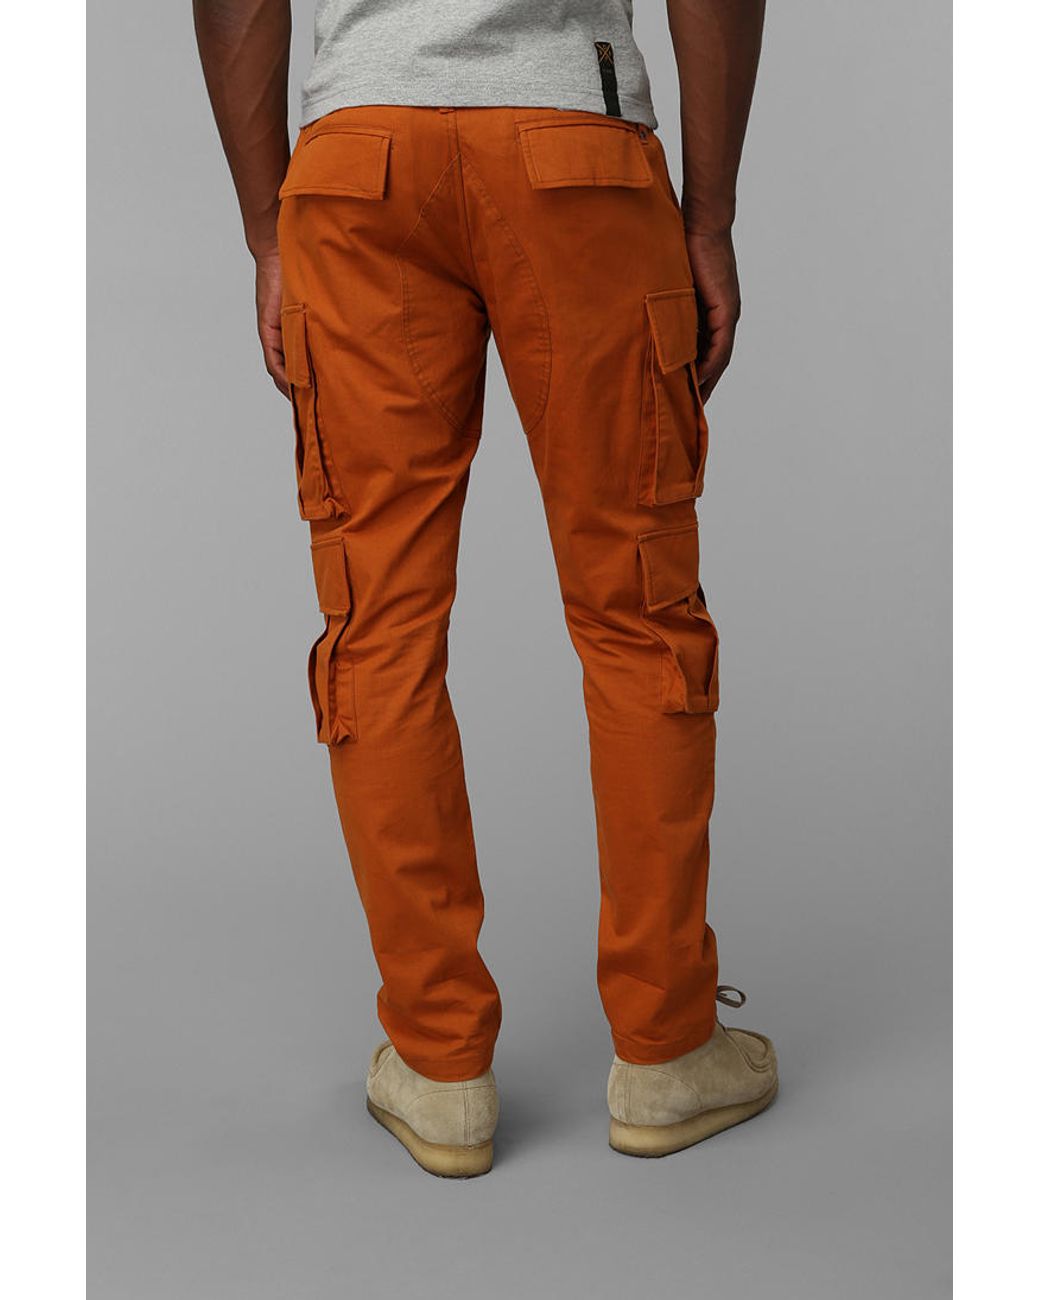 ASOS DESIGN cargo trousers in orange  ASOS